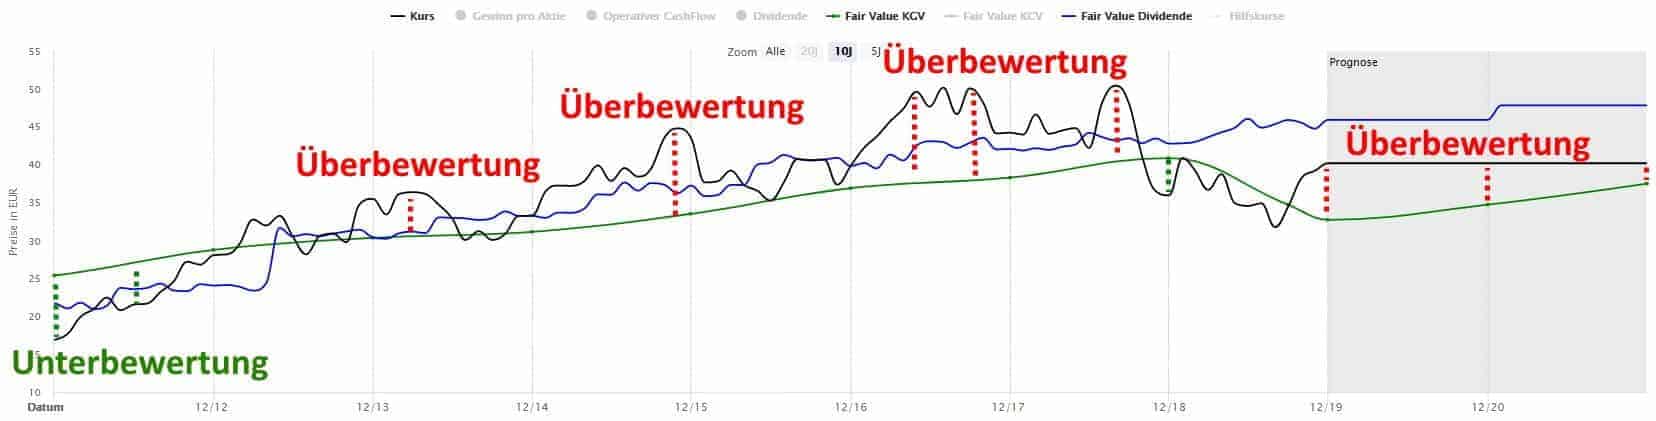 Über- und Unterbewertung der Fuchs Petrolub Aktie im Zeitverlauf